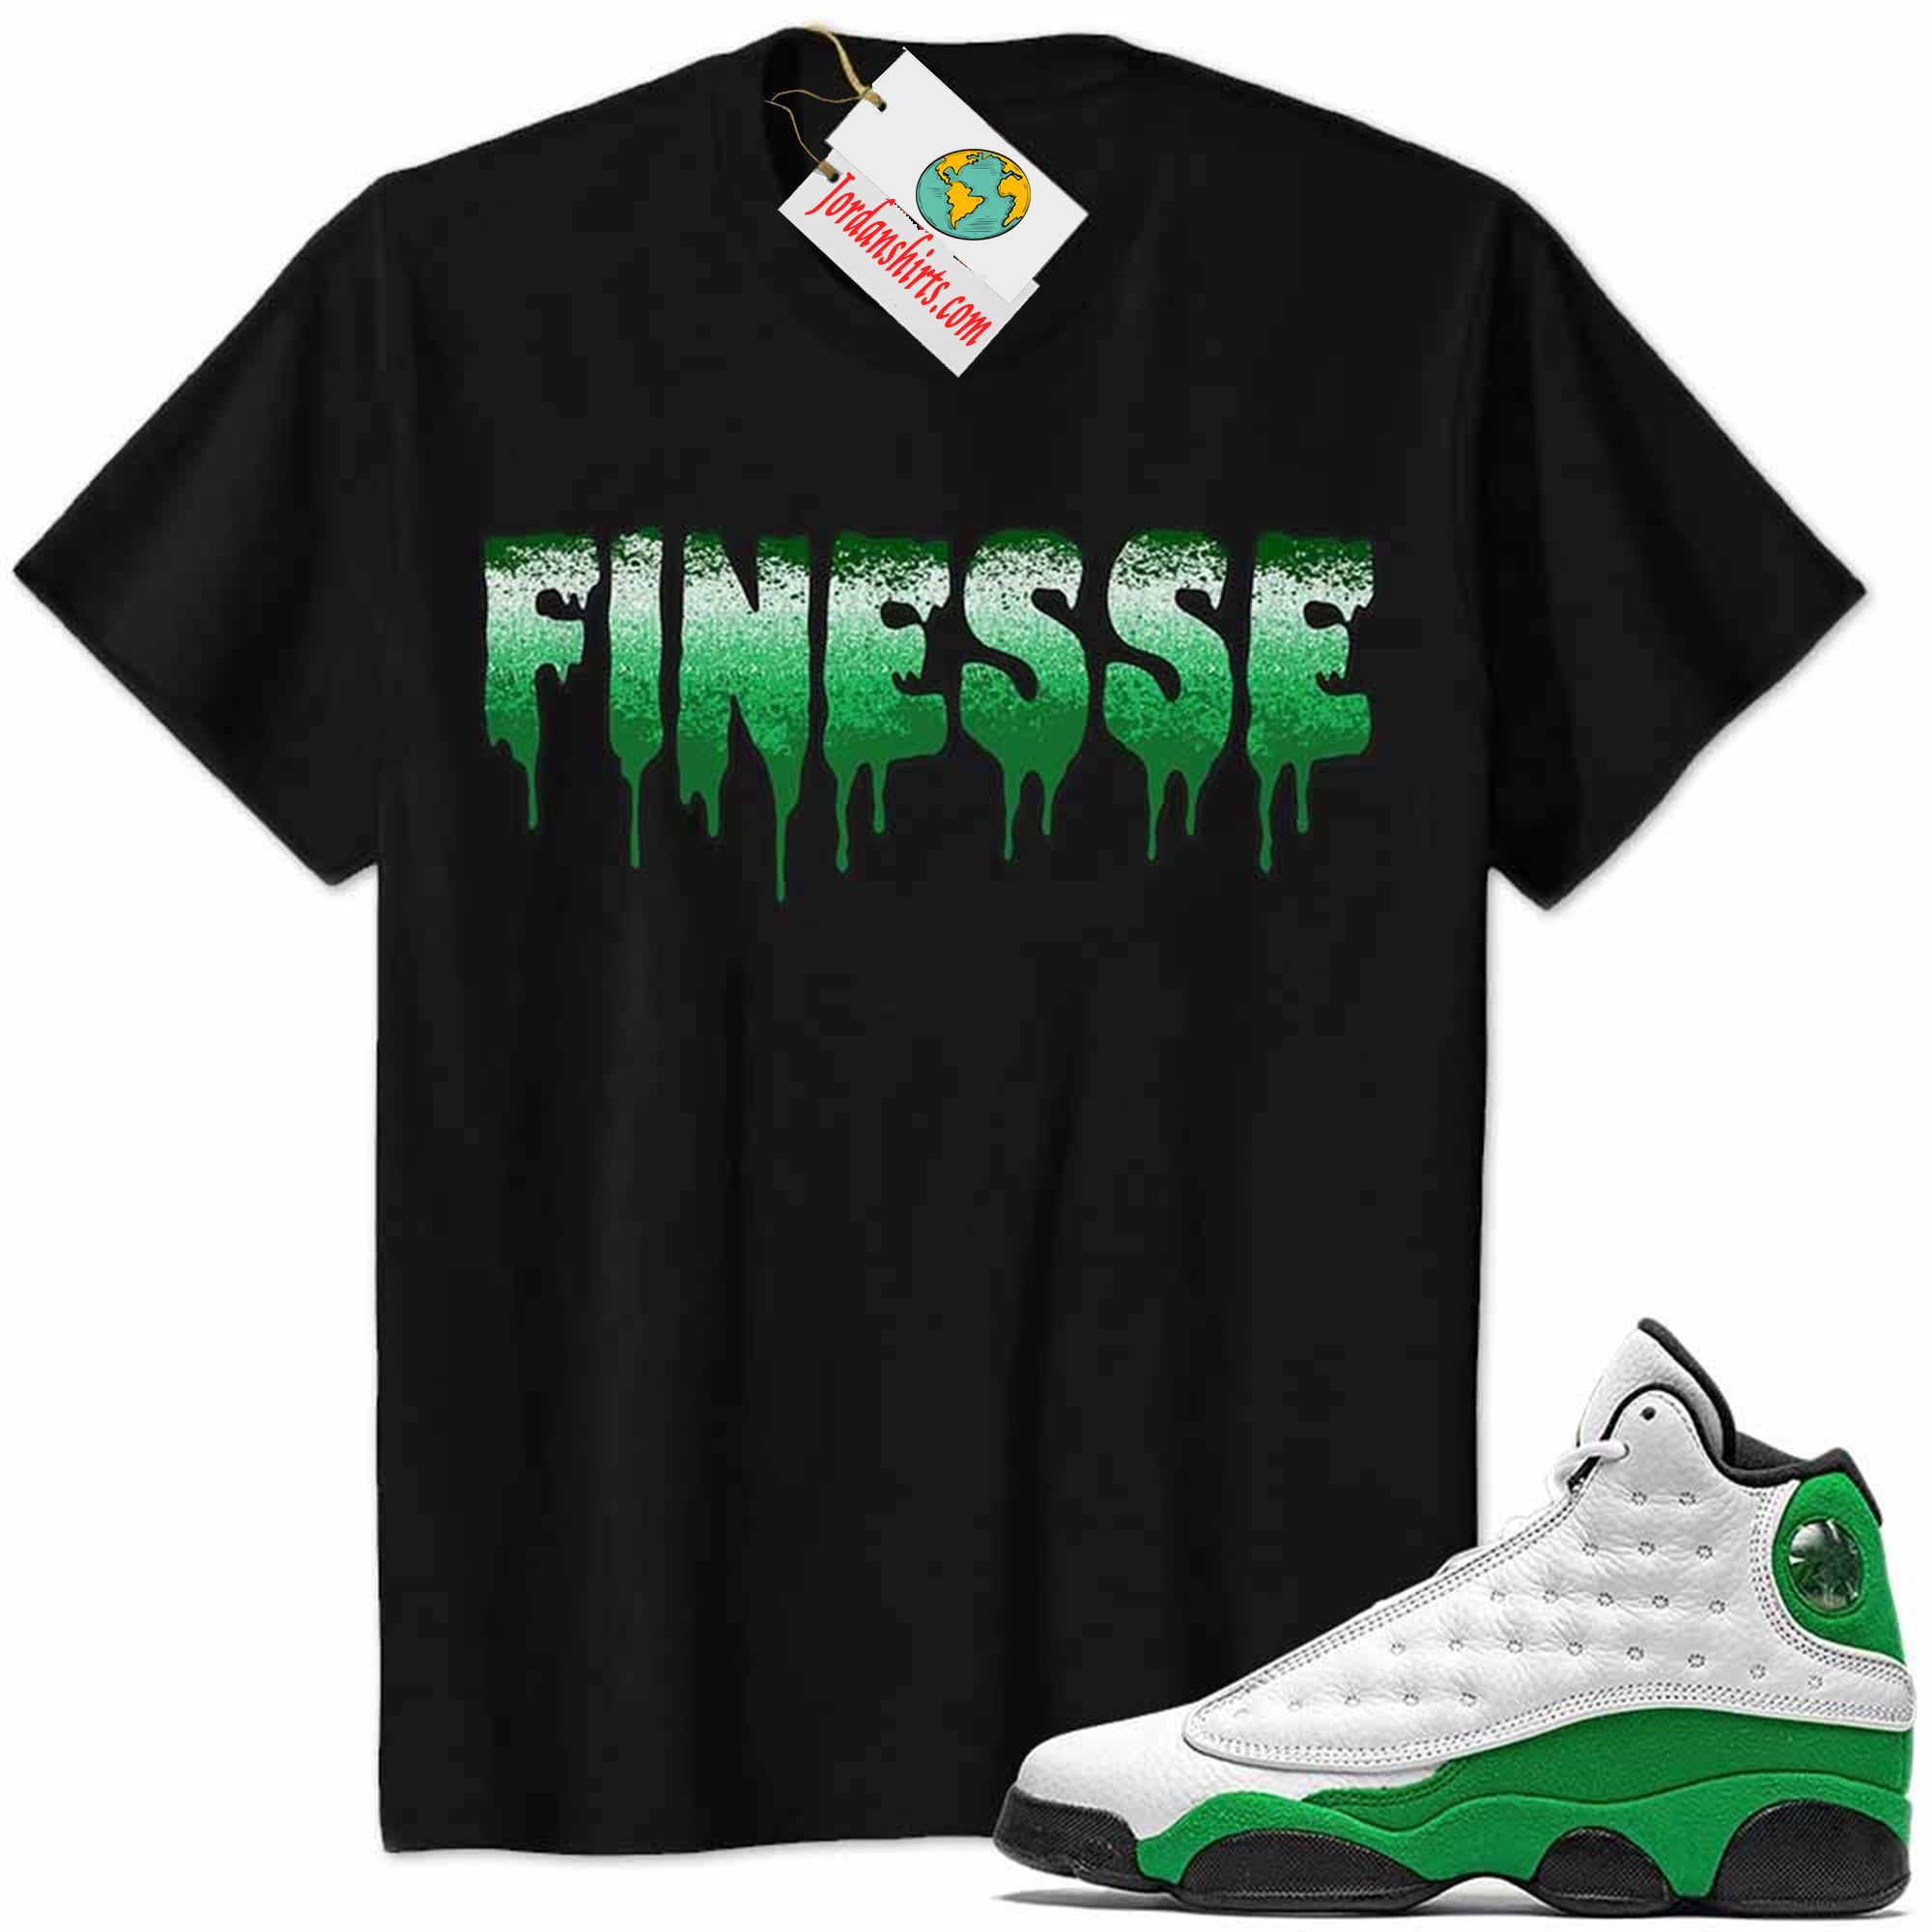 Jordan 13 Shirt, Jordan 13 Lucky Green Shirt Finesse Drip Black Full Size Up To 5xl